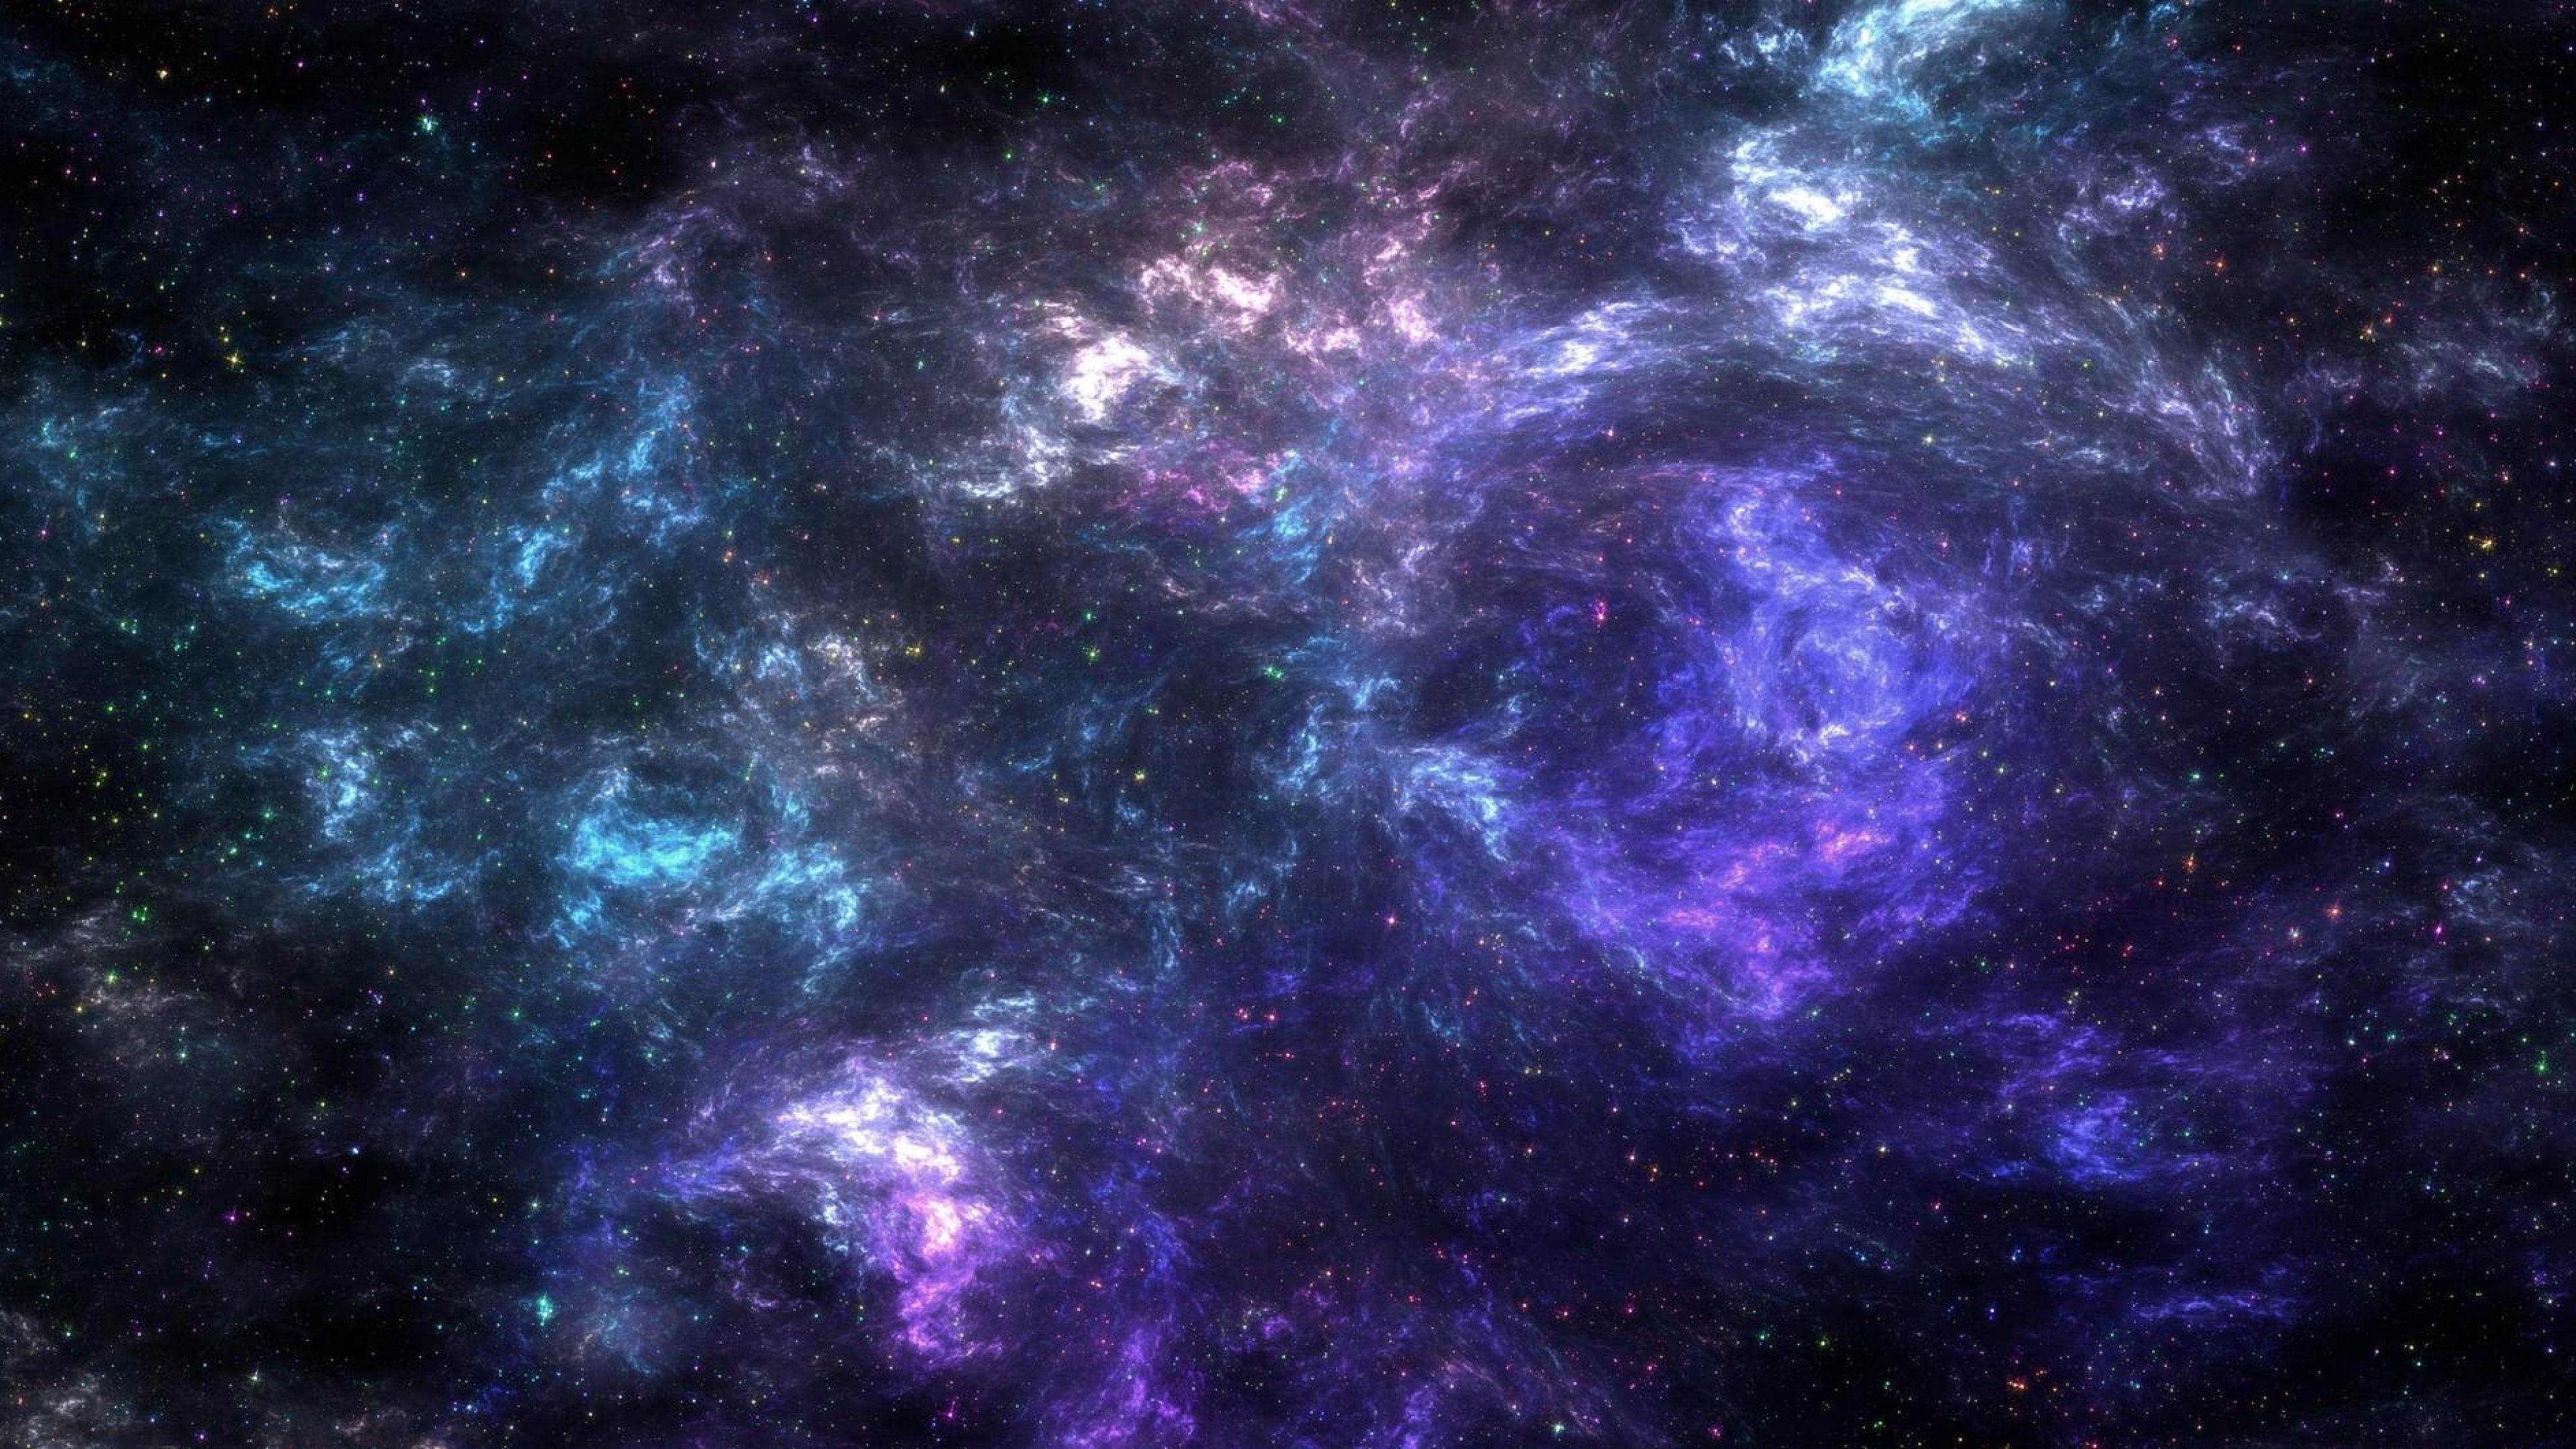 Với những bức hình nền galaxi sống động và đầy màu sắc, được thiết kế với chất lượng 4k tuyệt đẹp, chắc chắn sẽ đưa bạn đến thế giới vô cùng thú vị. Hãy tải ngay miễn phí để được trải nghiệm những mô-típ vũ trụ độc đáo và đẹp nhất.